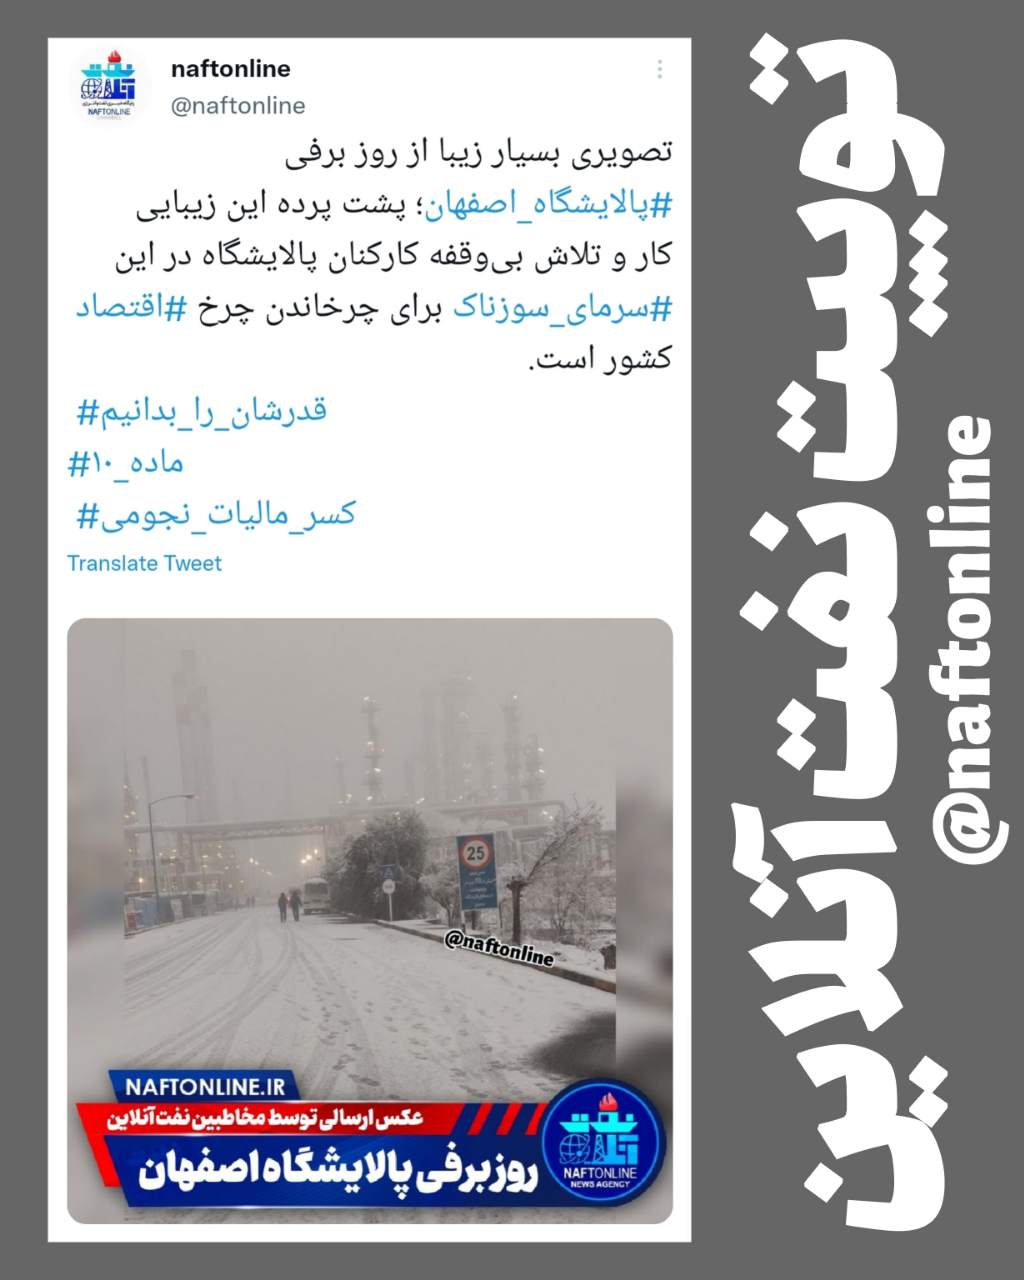 توییت نوشت | twitter | بارش برف در پالایشگاه اصفهان | نفت آنلاین